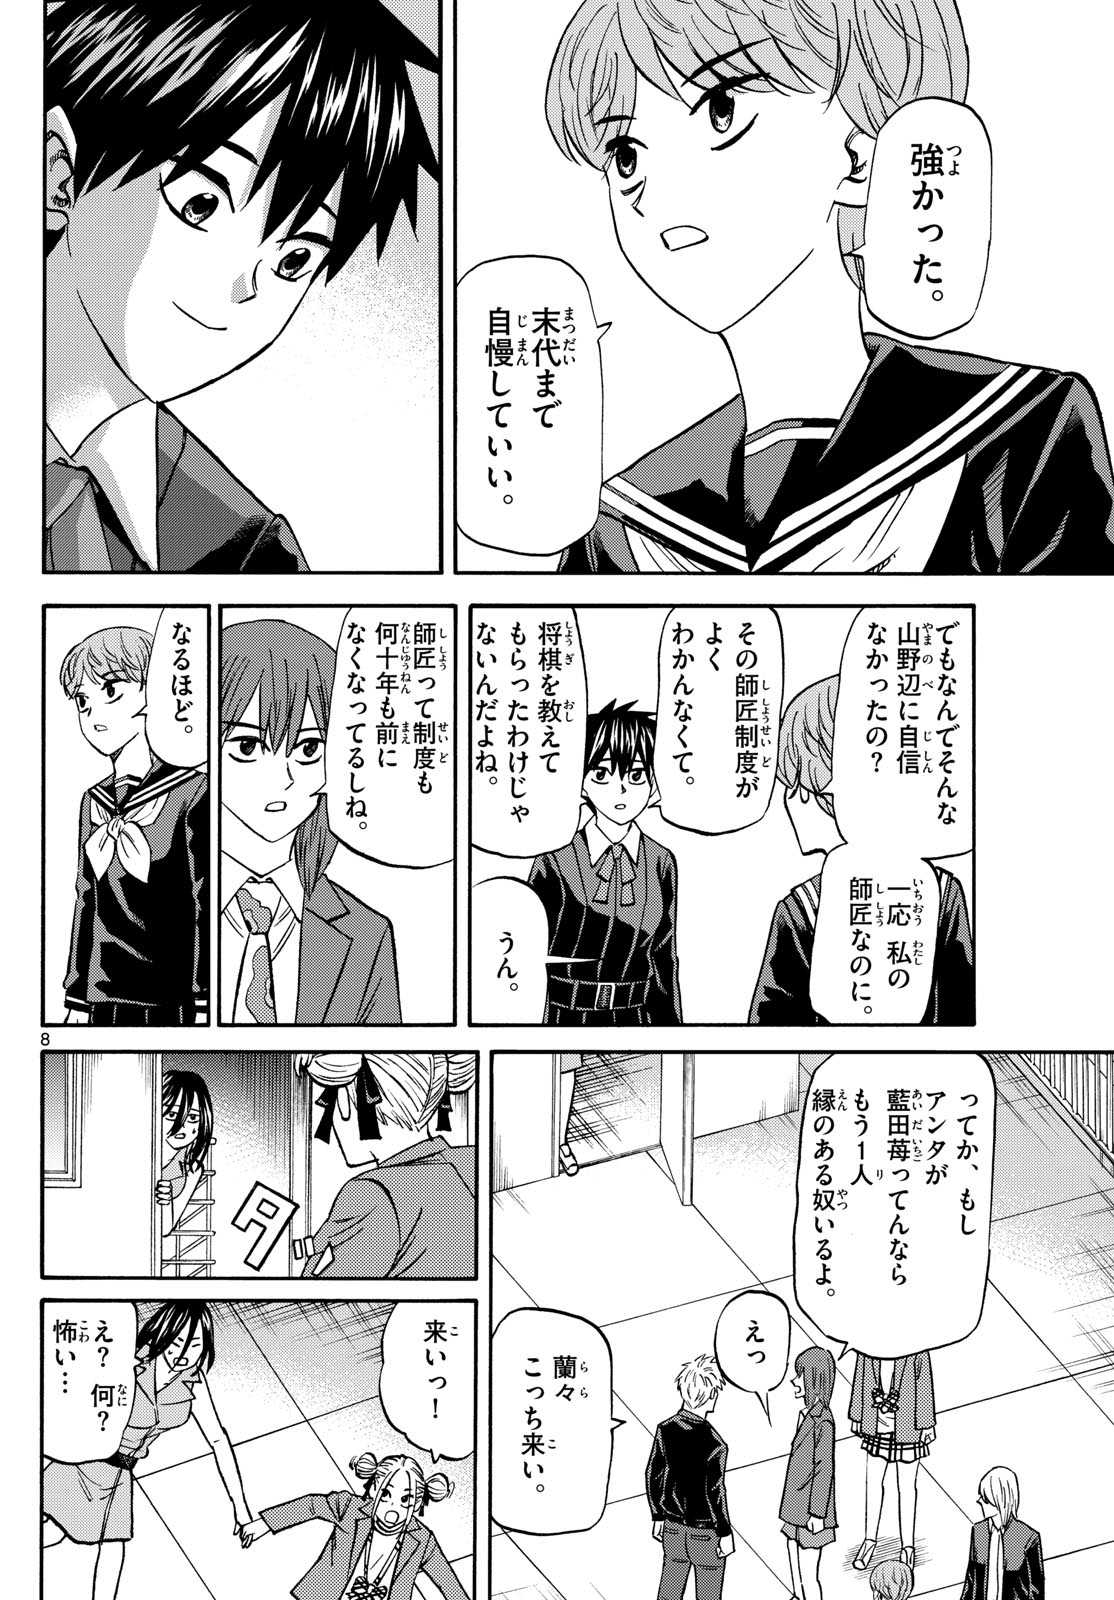 Tatsu to Ichigo - Chapter 188 - Page 8